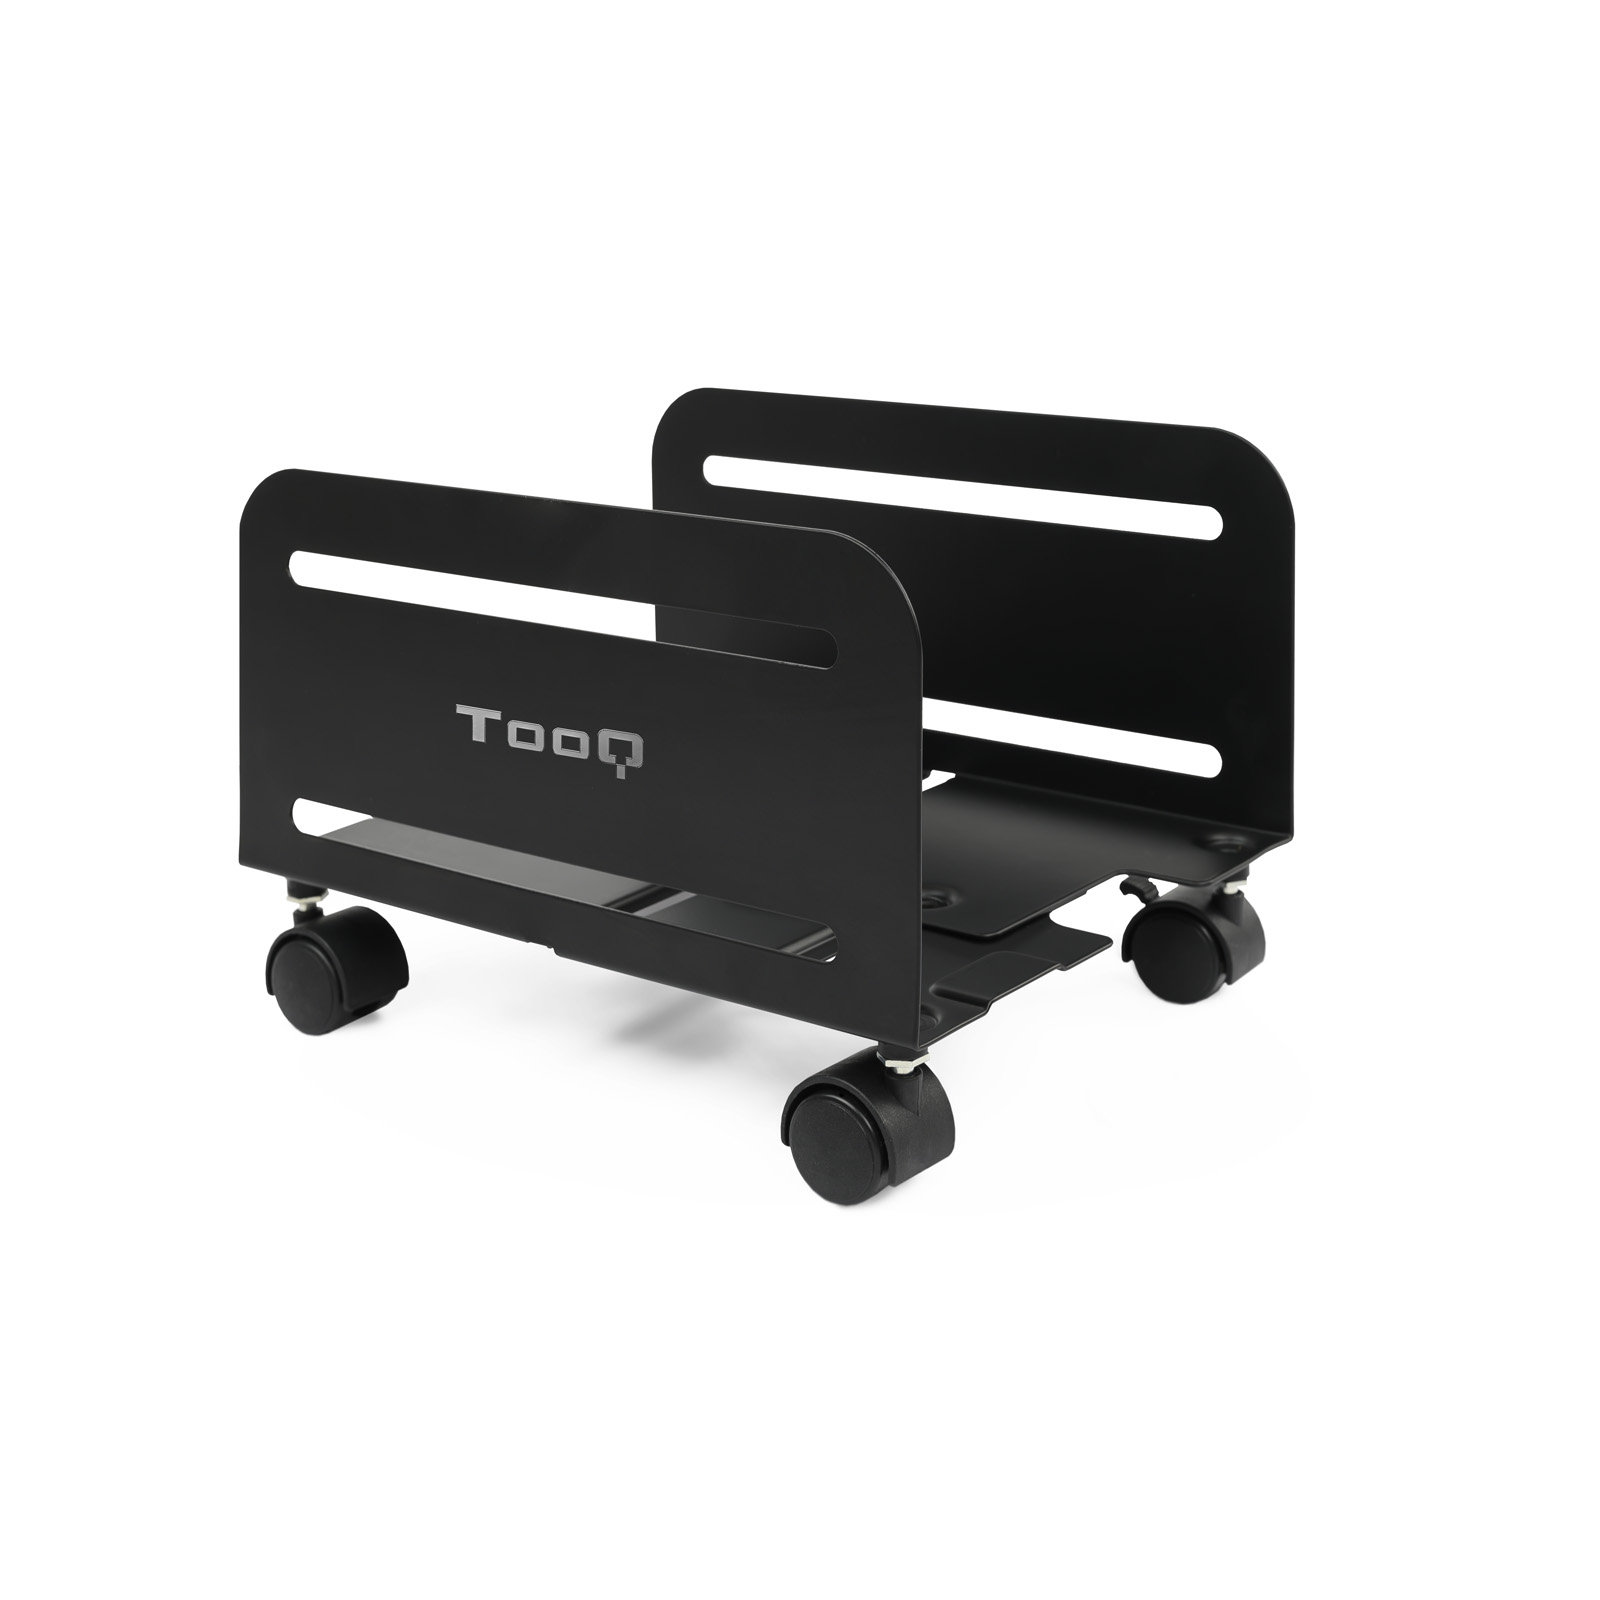 Support de sol Tooq avec roulettes pour processeur de 119 à 209 mm de large - Poids maximum 10 kg - Couleur noire